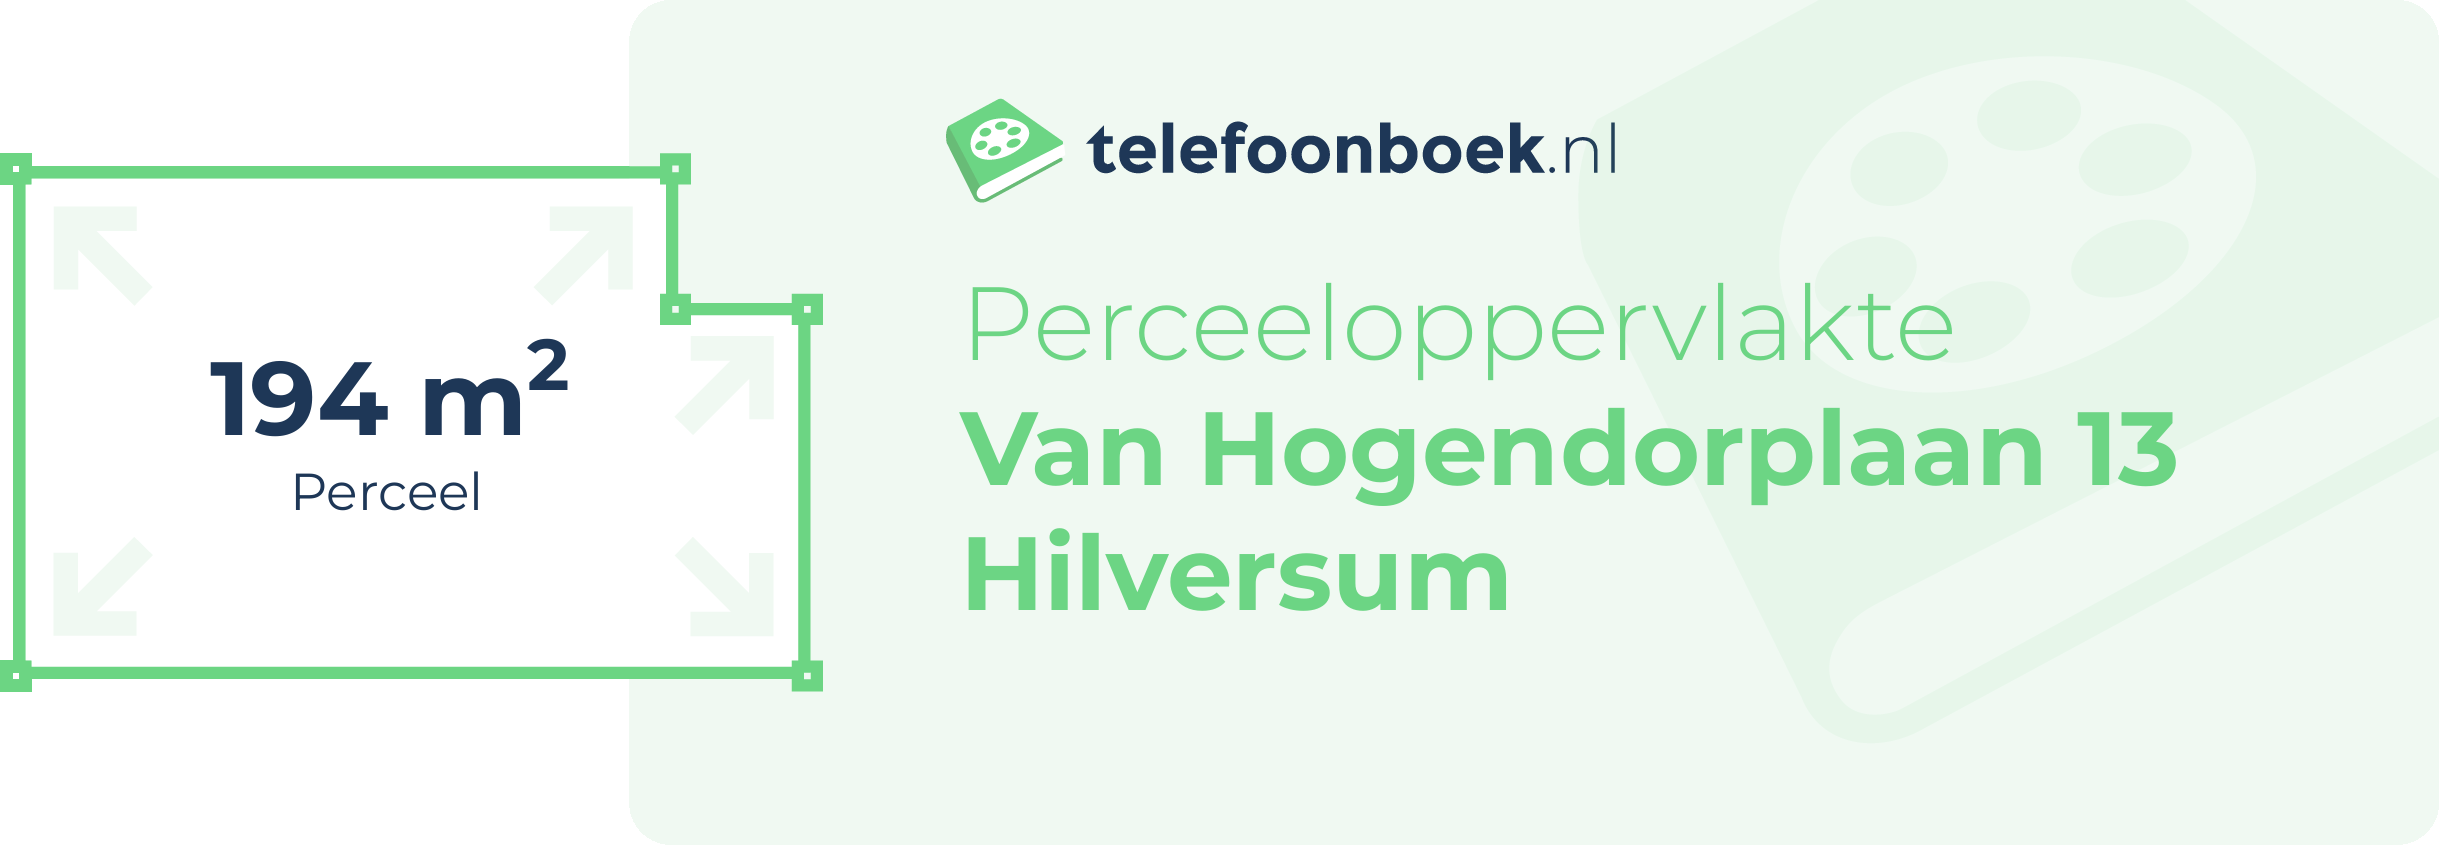 Perceeloppervlakte Van Hogendorplaan 13 Hilversum